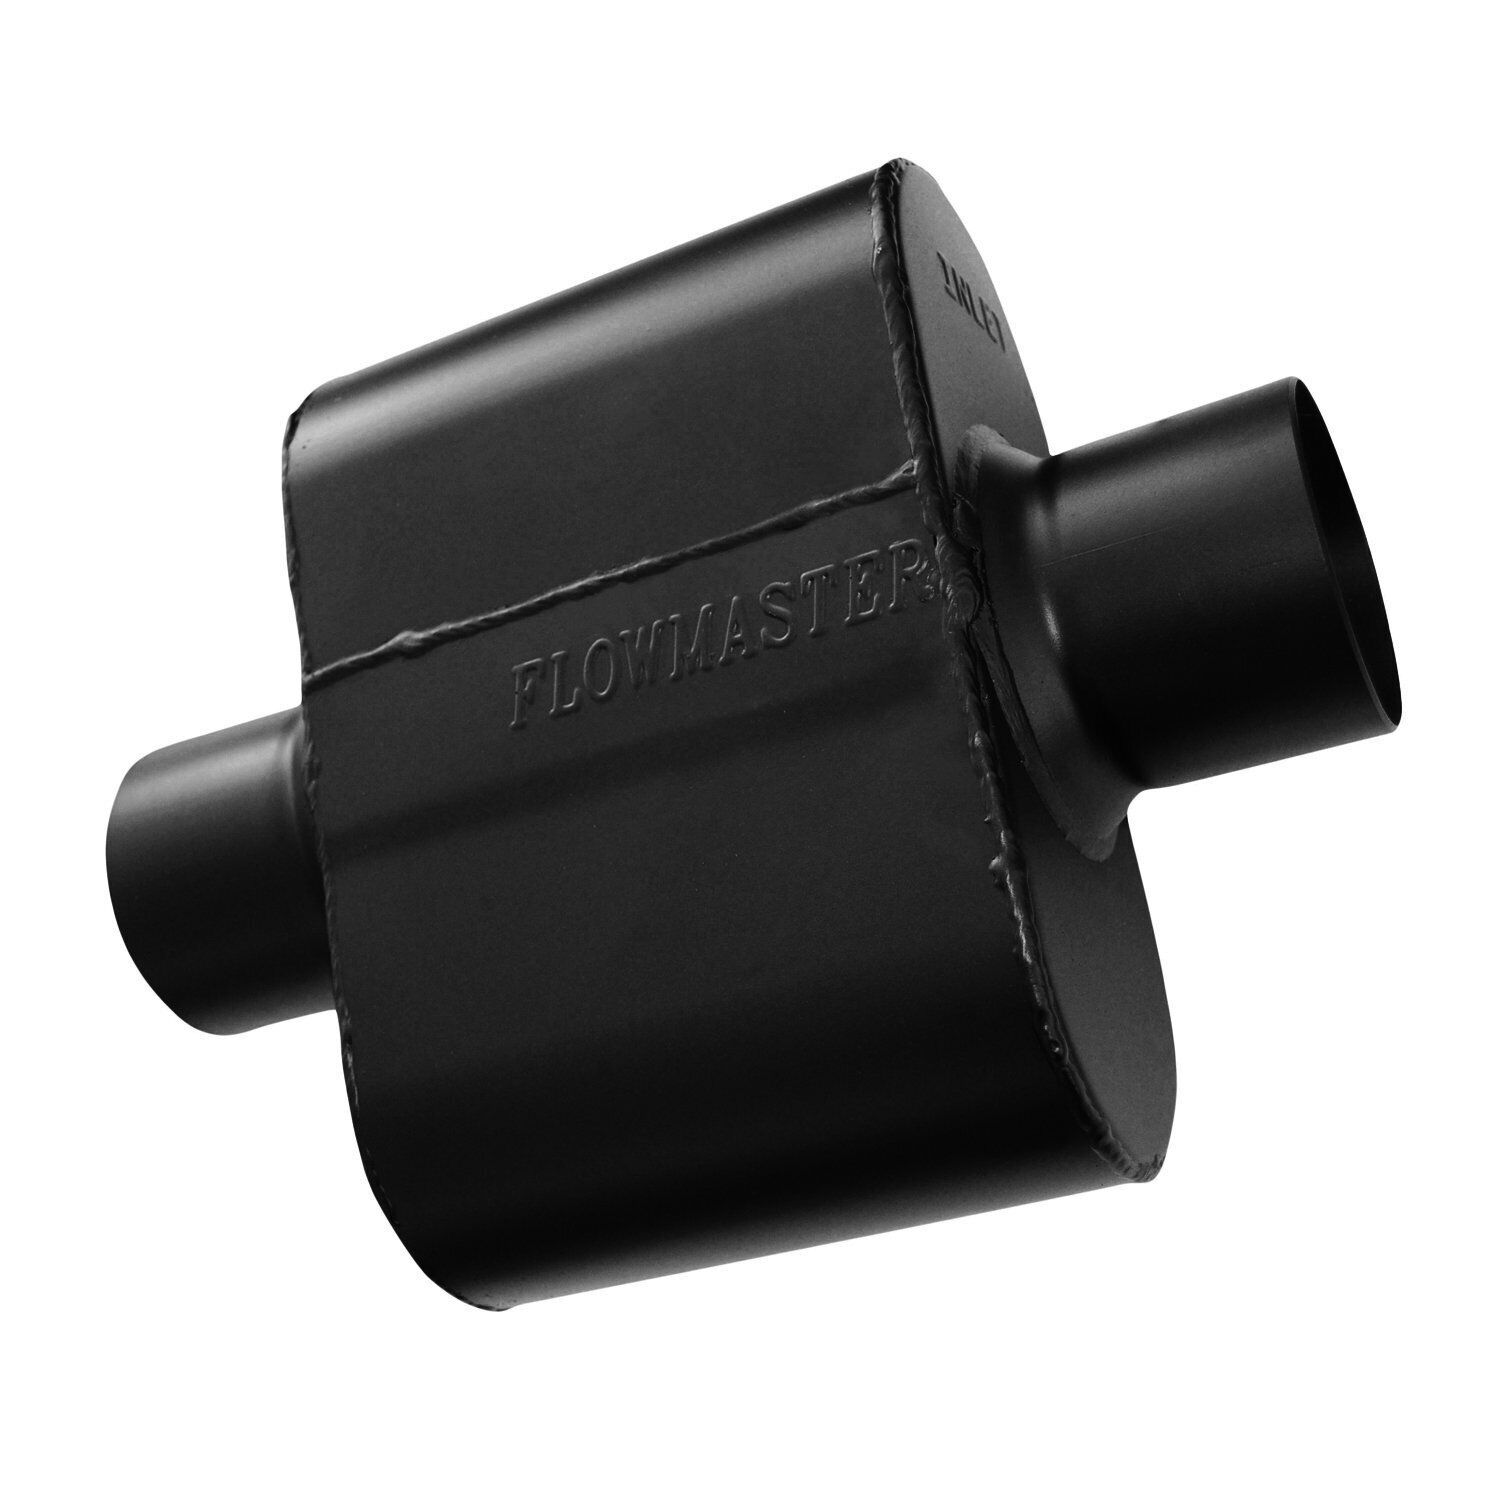 843015 Flowmaster Super 10 Series Chambered Muffler